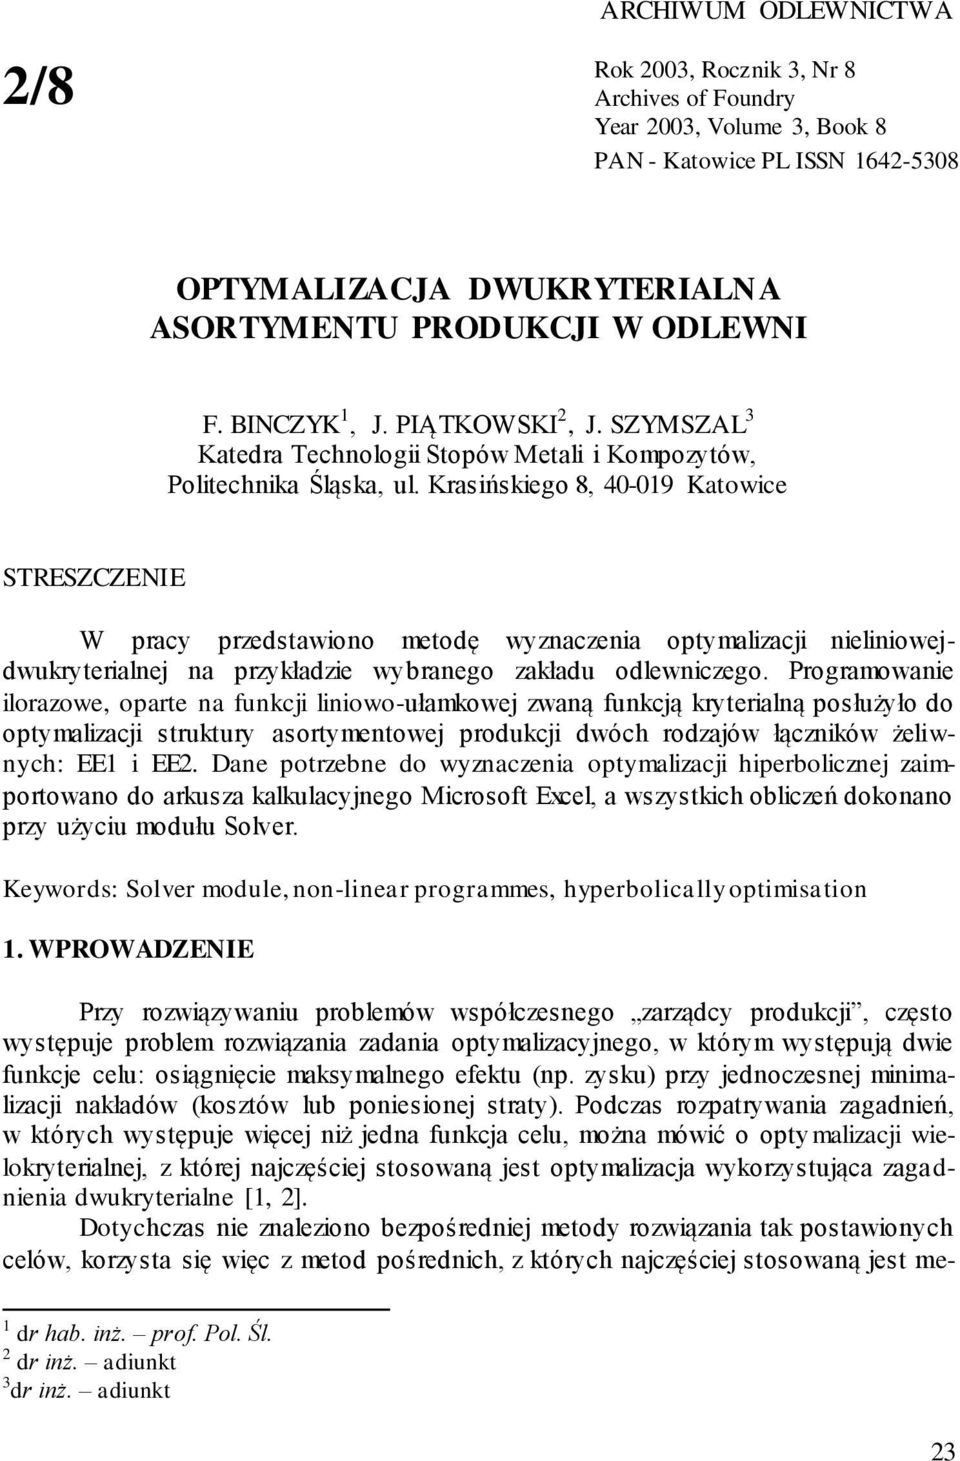 Krasińskiego 8, 40-019 Katowice STRESZCZENIE W pracy przedstawiono metodę wyznaczenia optymalizaci nieliniowedwukryterialne na przykładzie wybranego zakładu odlewniczego.